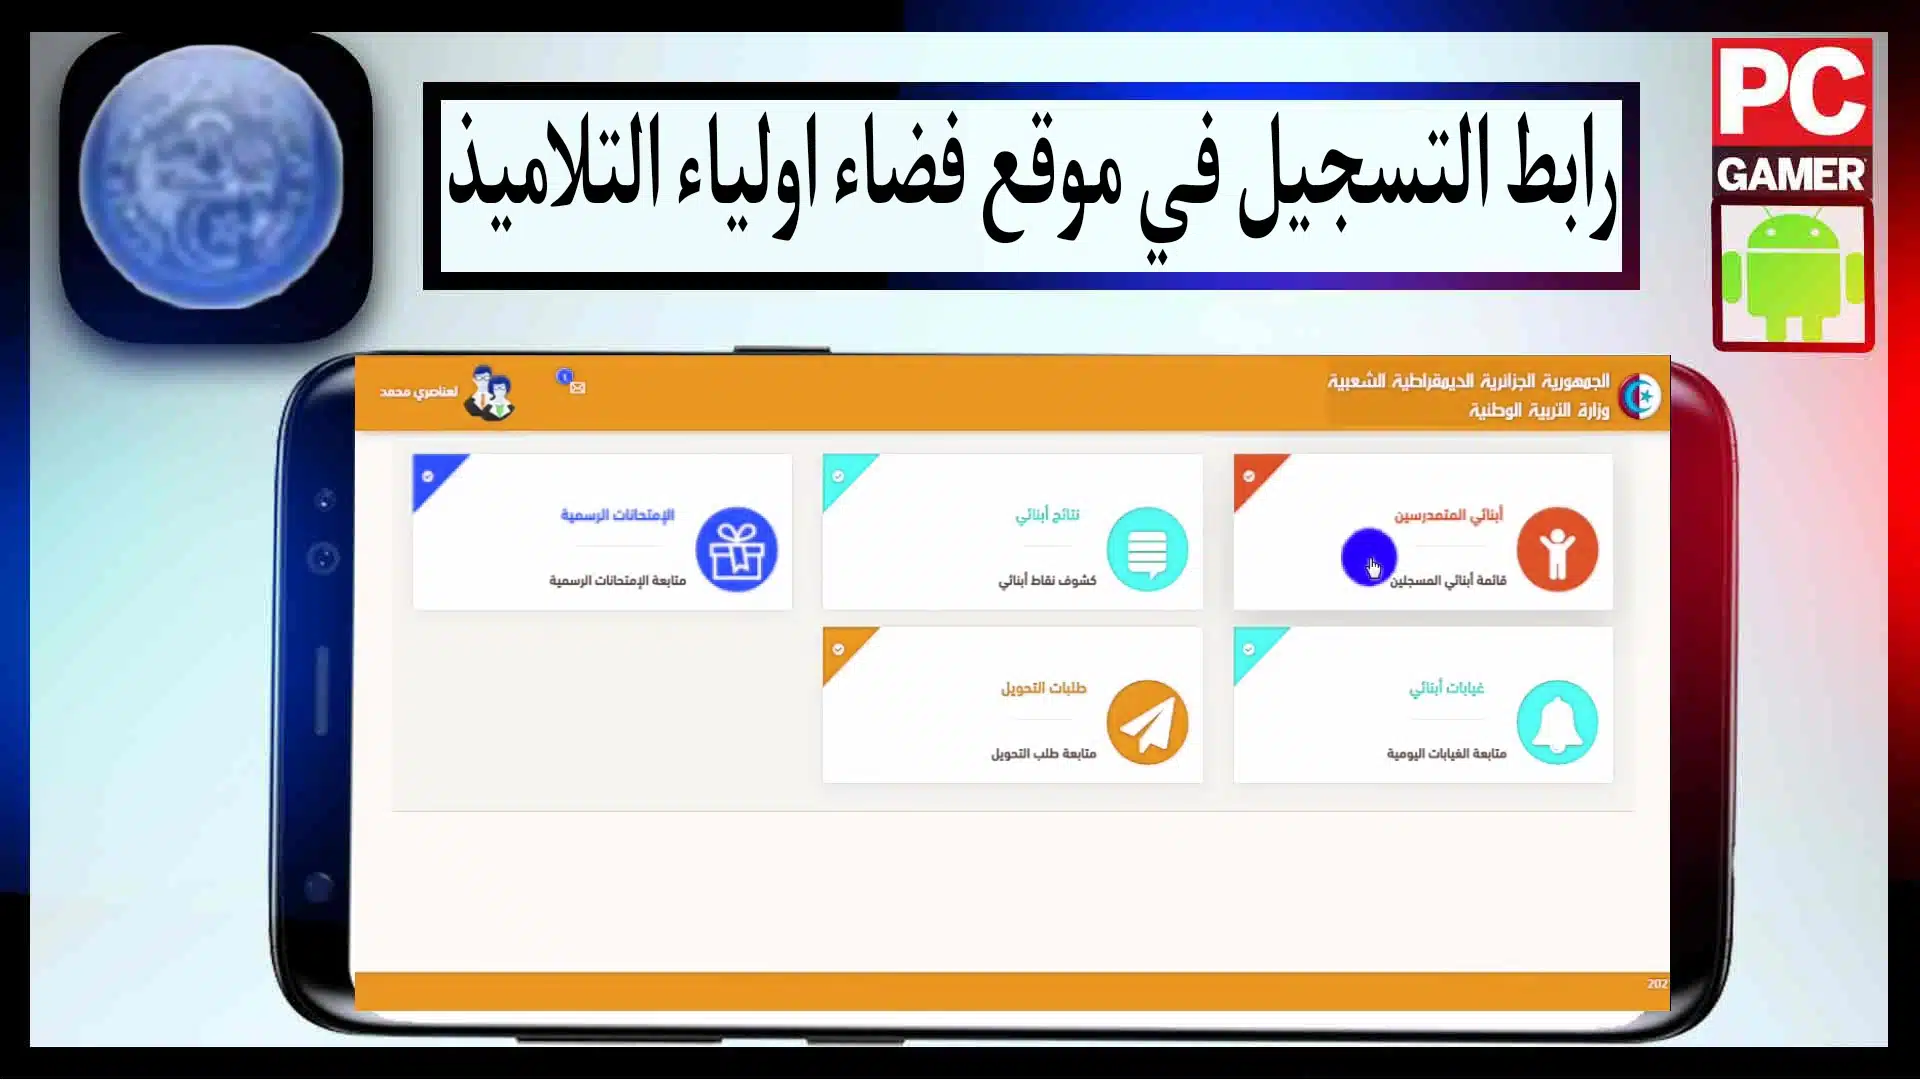 رابط التسجيل في موقع فضاء اولياء التلاميذ tharwa.education.gov.dz بالجزائر